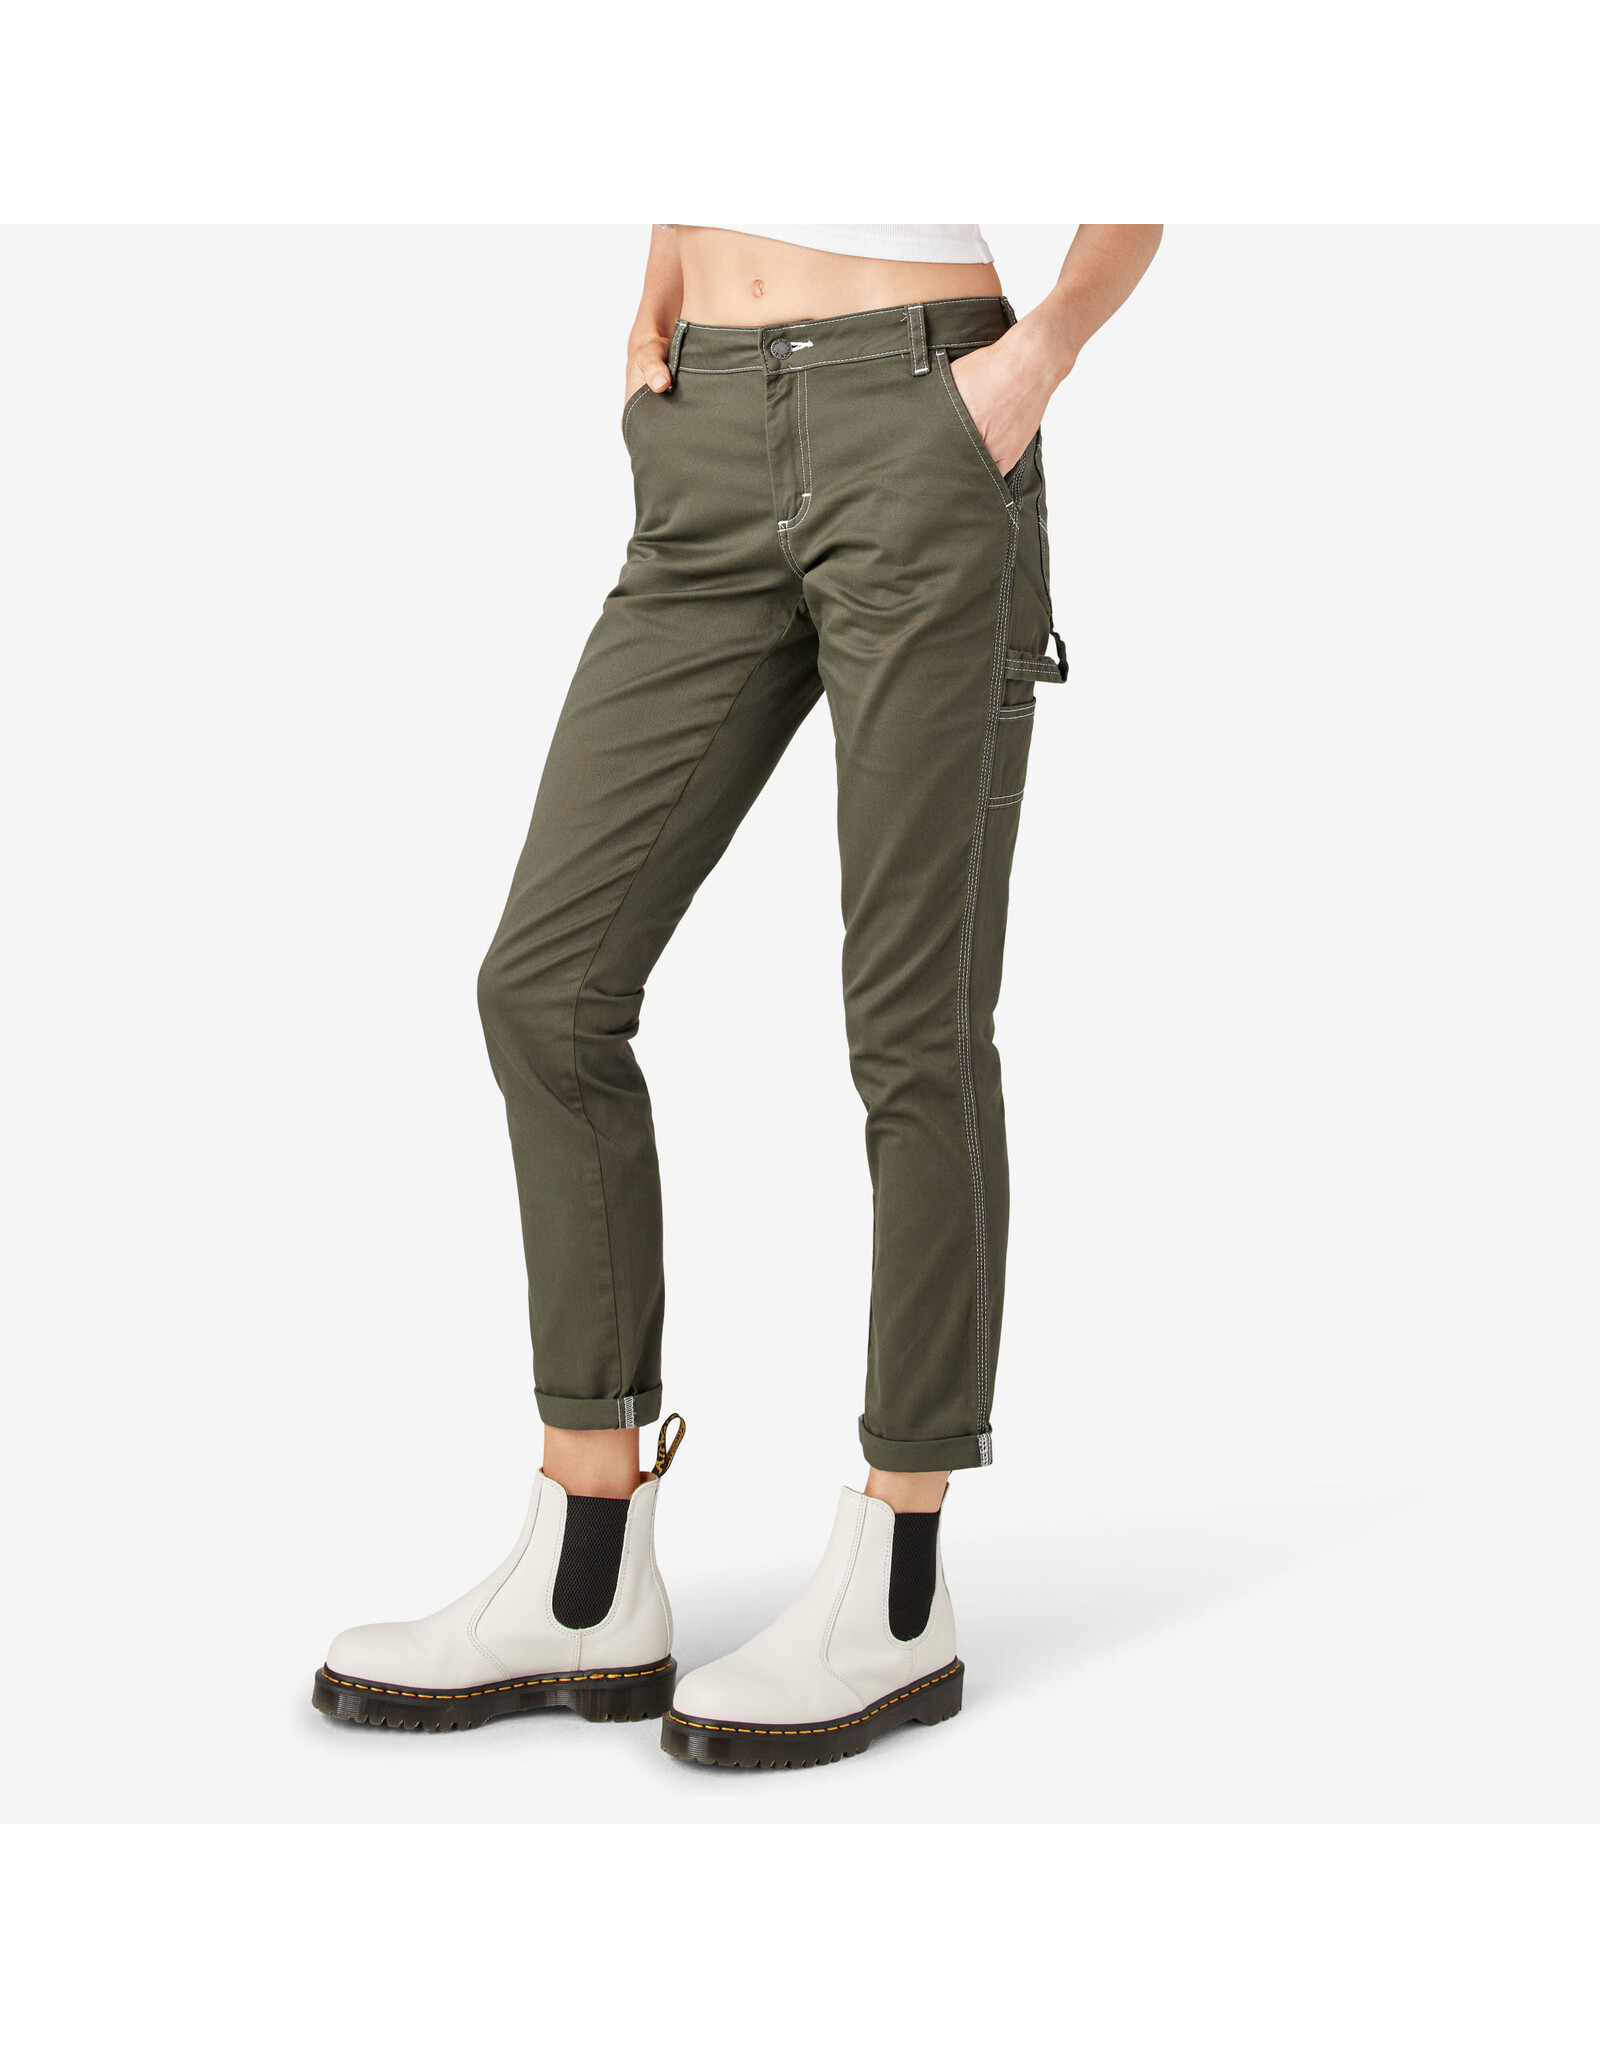 DICKIES Women's Slim Straight Fit Roll Hem Carpenter Pants Olive Green - FPR53OG